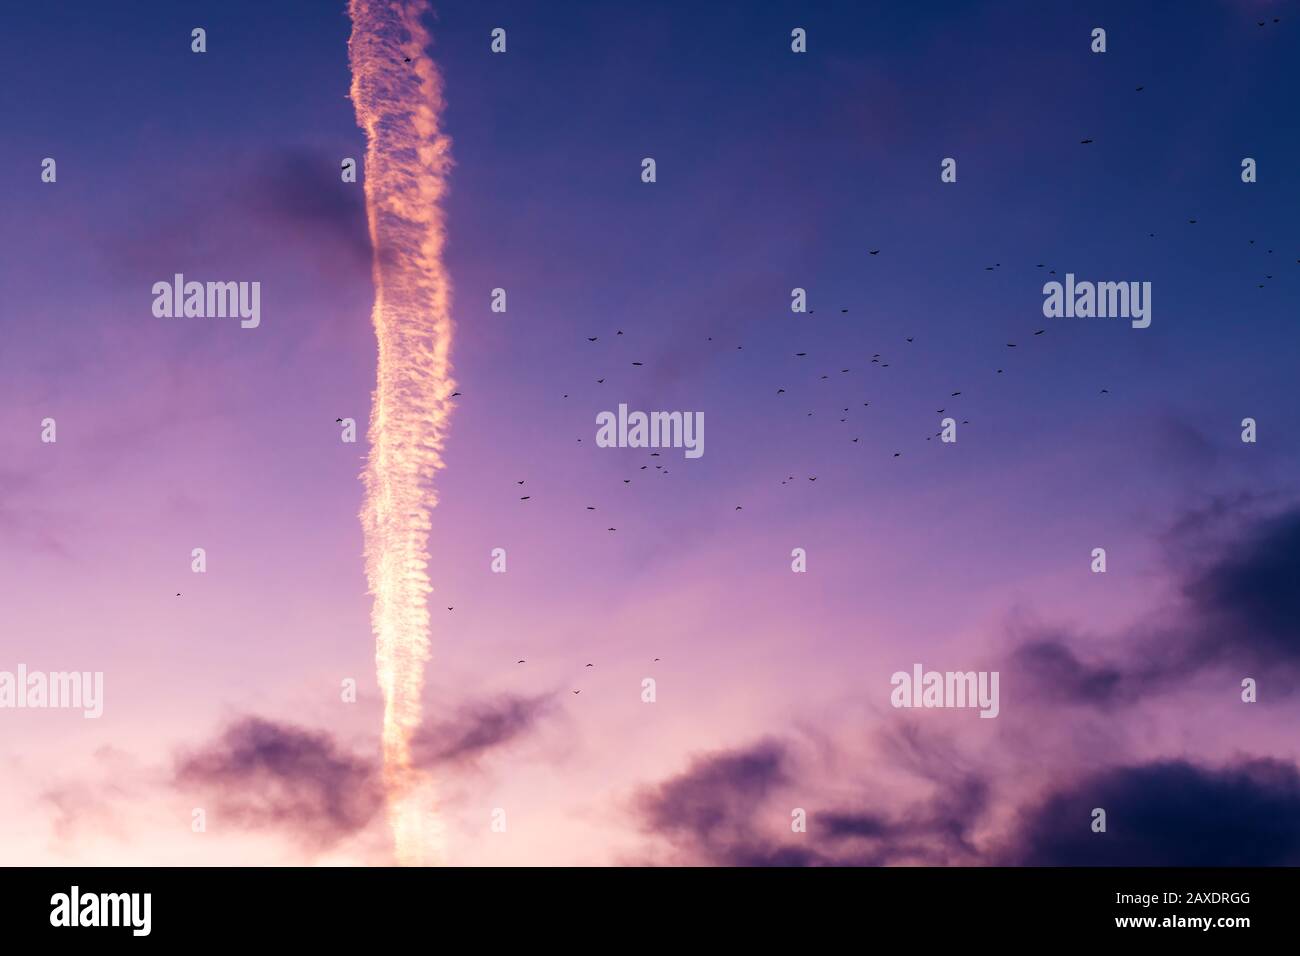 Rebaño de gaviotas volando a través del colorido cielo de la puesta de sol, siluetas de aves contra el paisaje de nubes vívidas Foto de stock